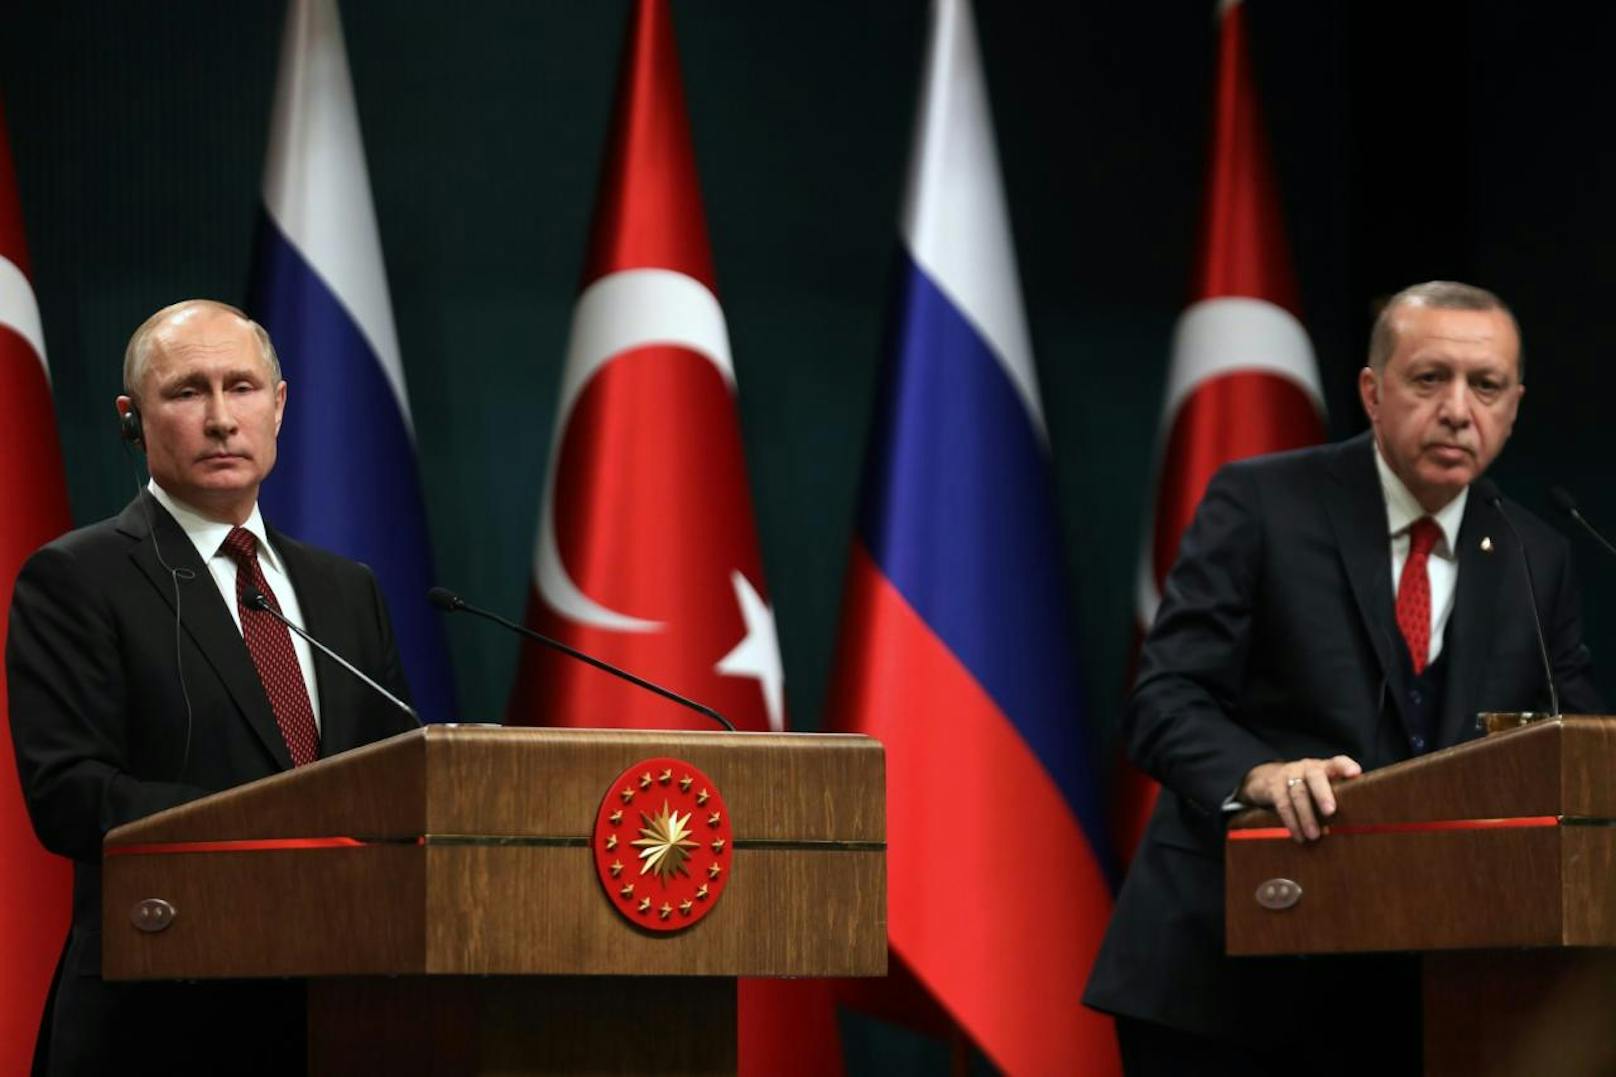 Erdogan sagte, dass die erste Auslandreise seines «lieben Freundes» Putin seit dessen Wiederwahl in die Türkei geführt habe, unterstreiche die Bedeutung der bilateralen Beziehungen.